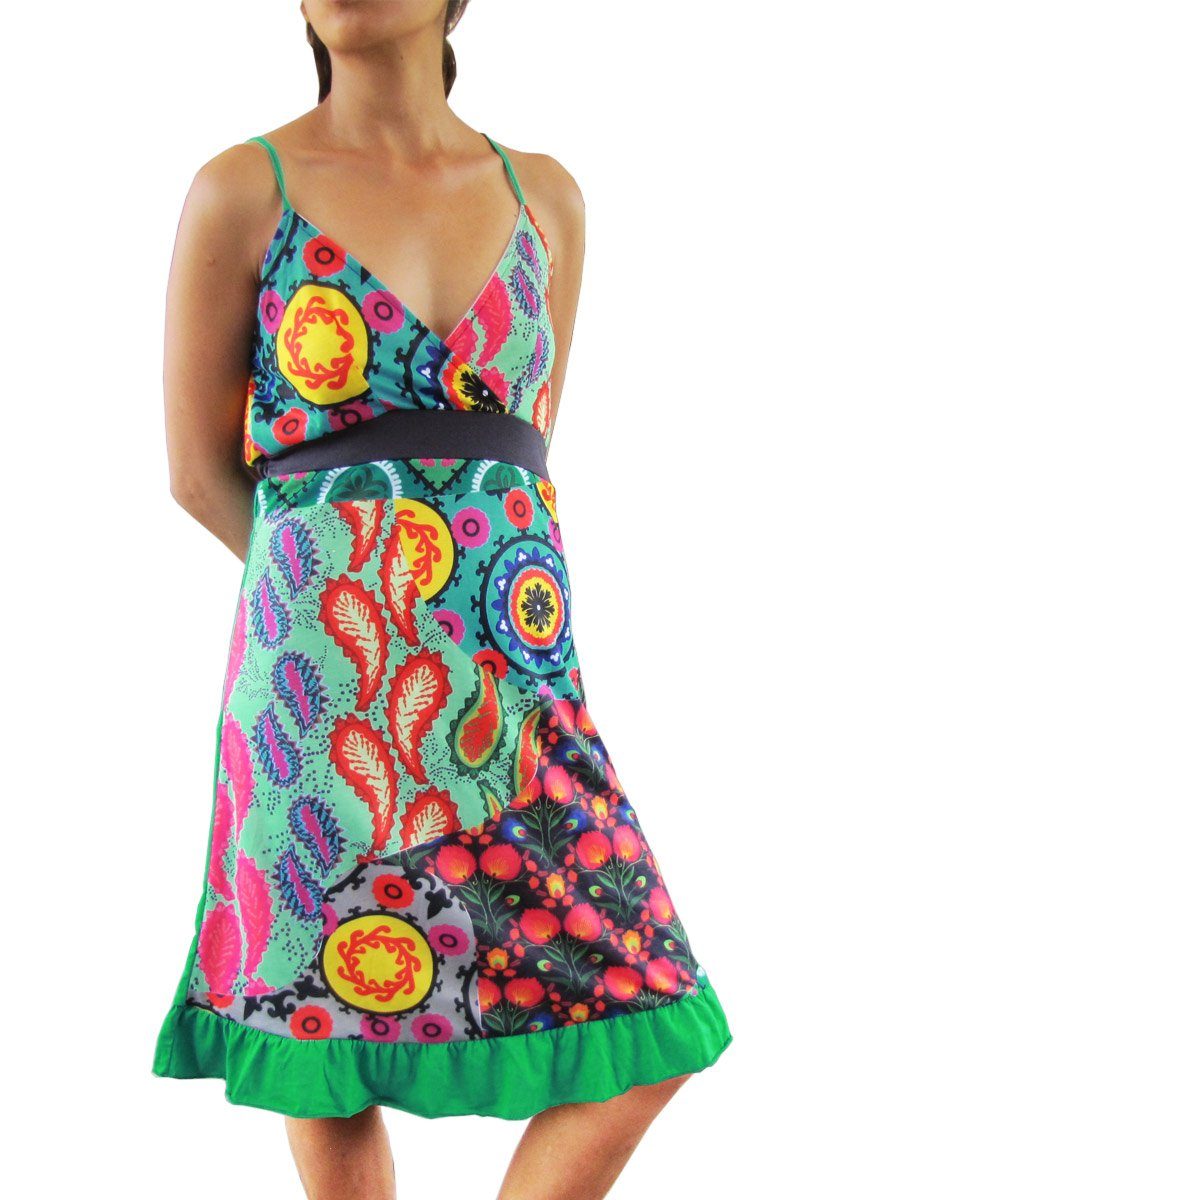 PANASIAM Tunikakleid Underground Sommerkleid in verschiedenen Designs Tunika aus Baumwolle Kleid auch für Schlagerparty 70er Party oder Festivals ein Hingucker Grün